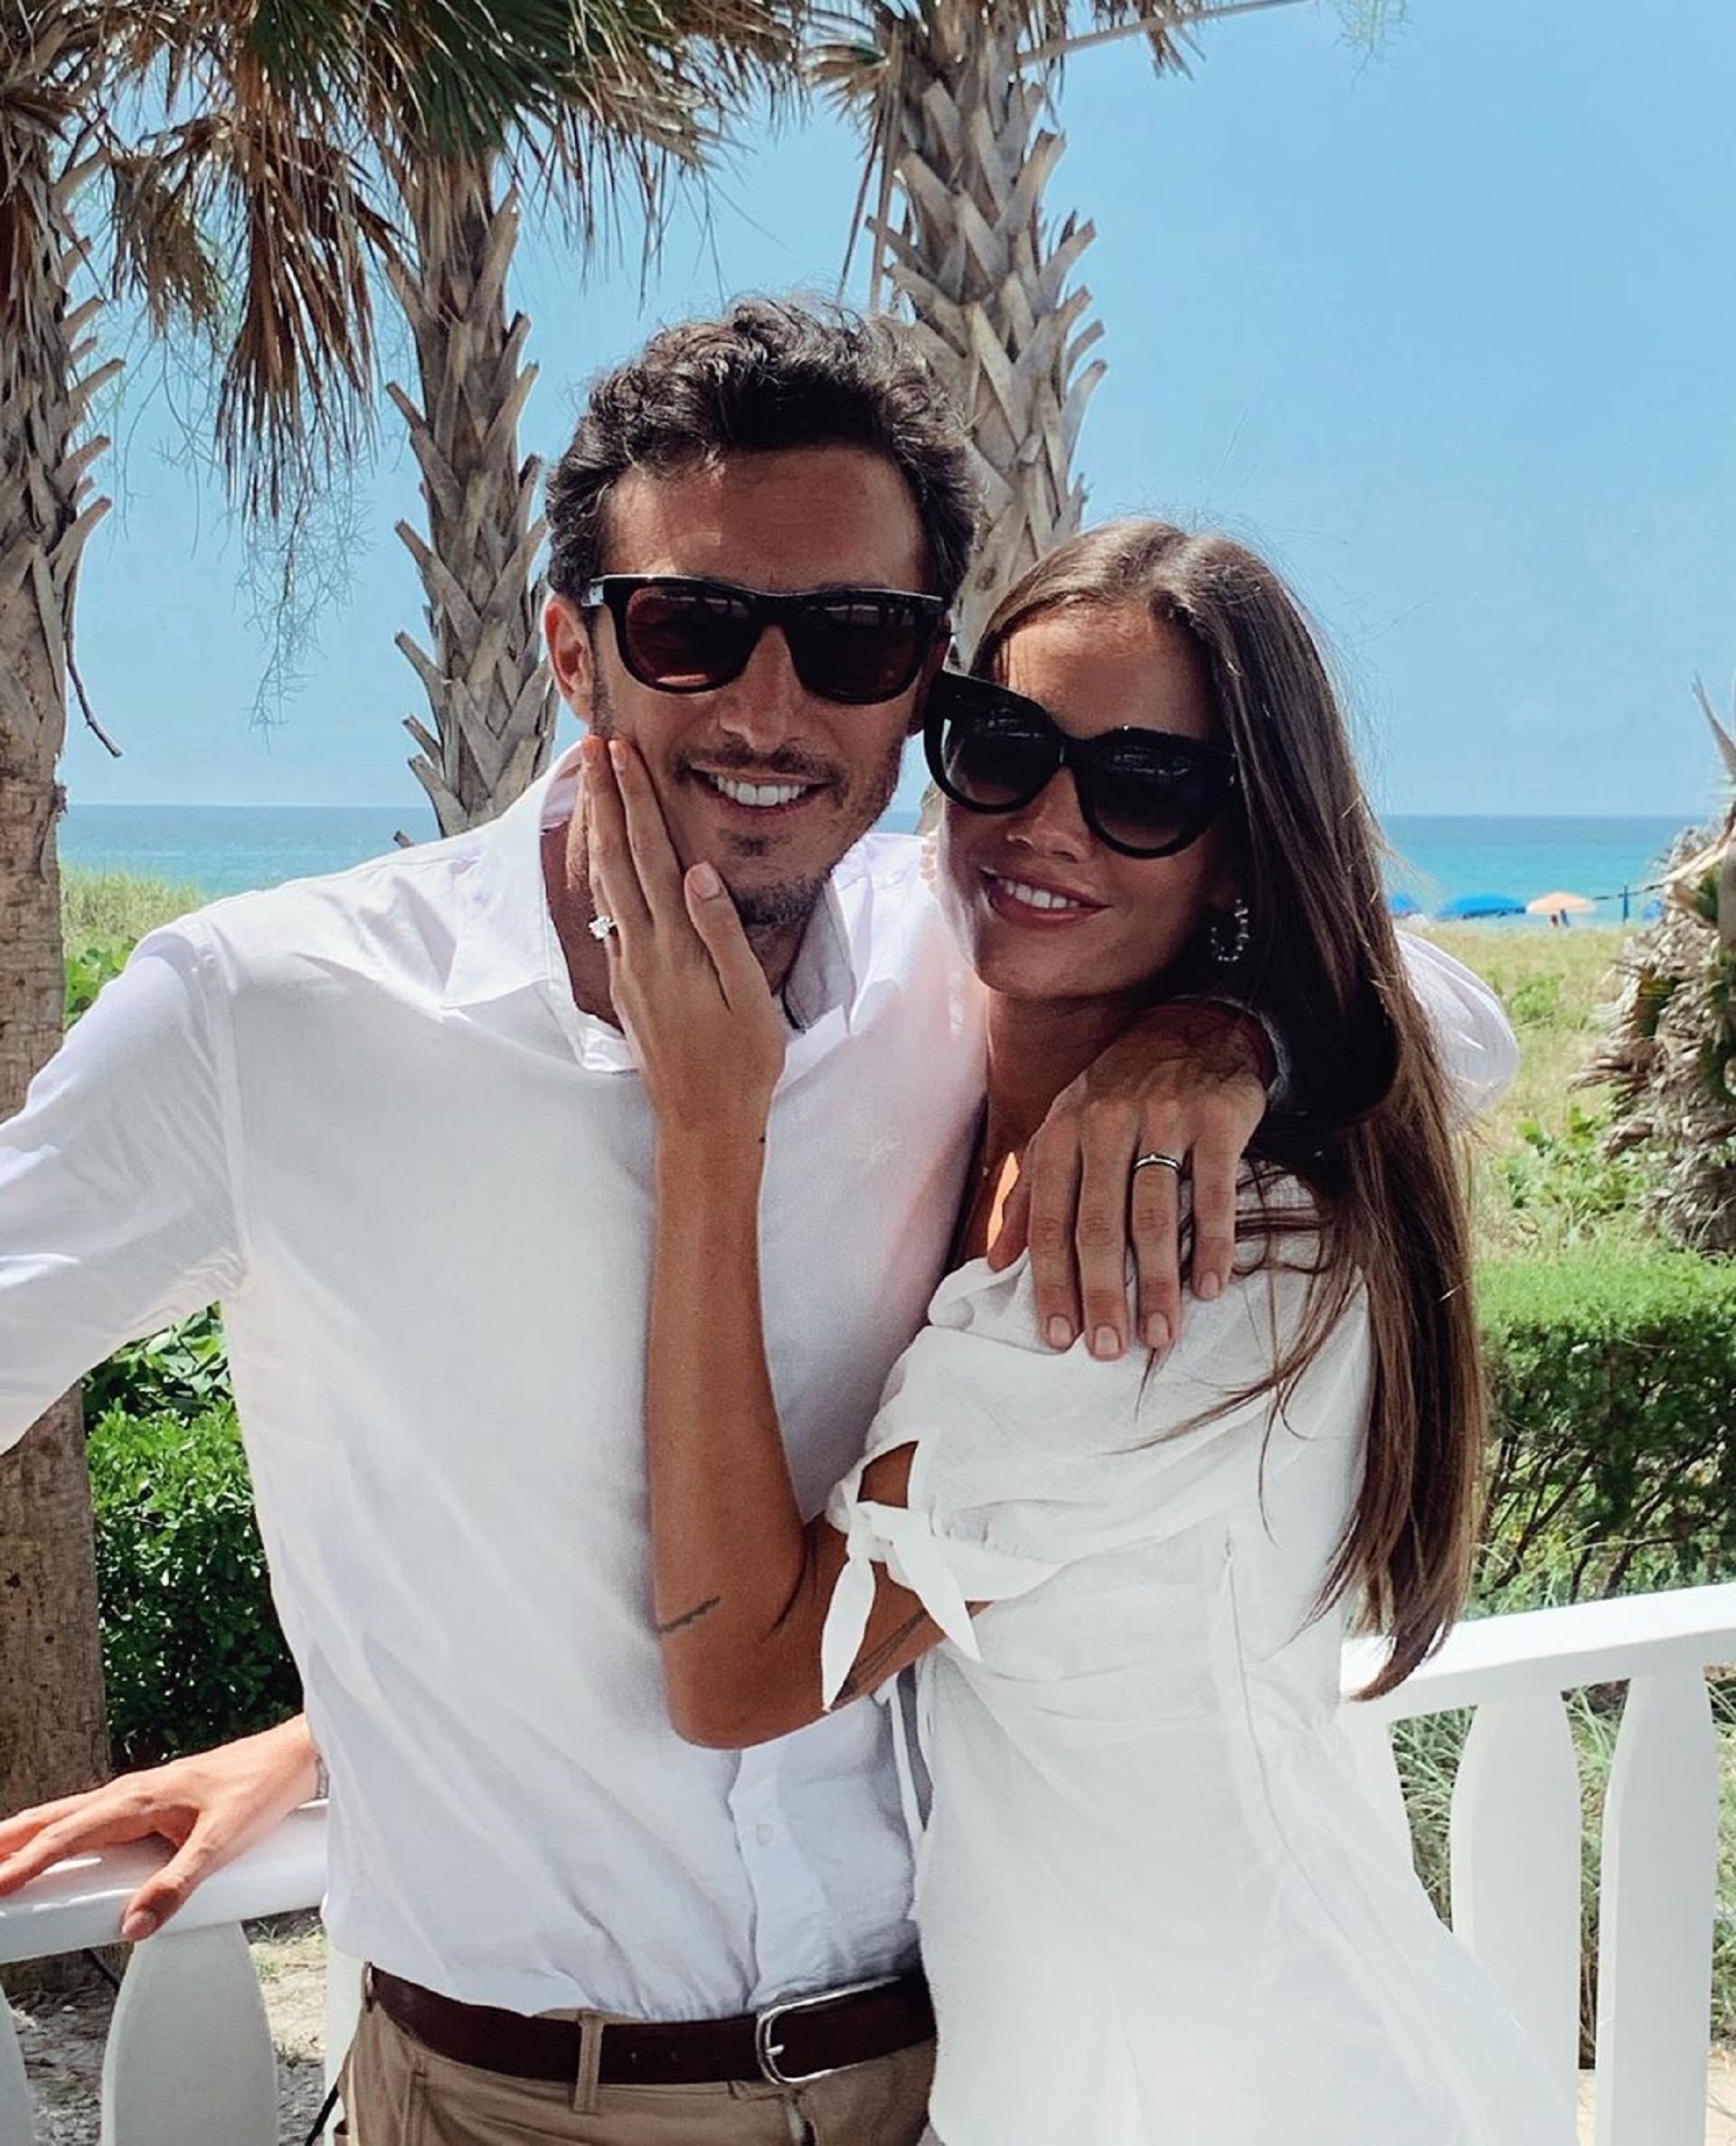 Con esta imagen Pico Mónaco anunció su sorpresivo casamiento (Foto: Instagram)